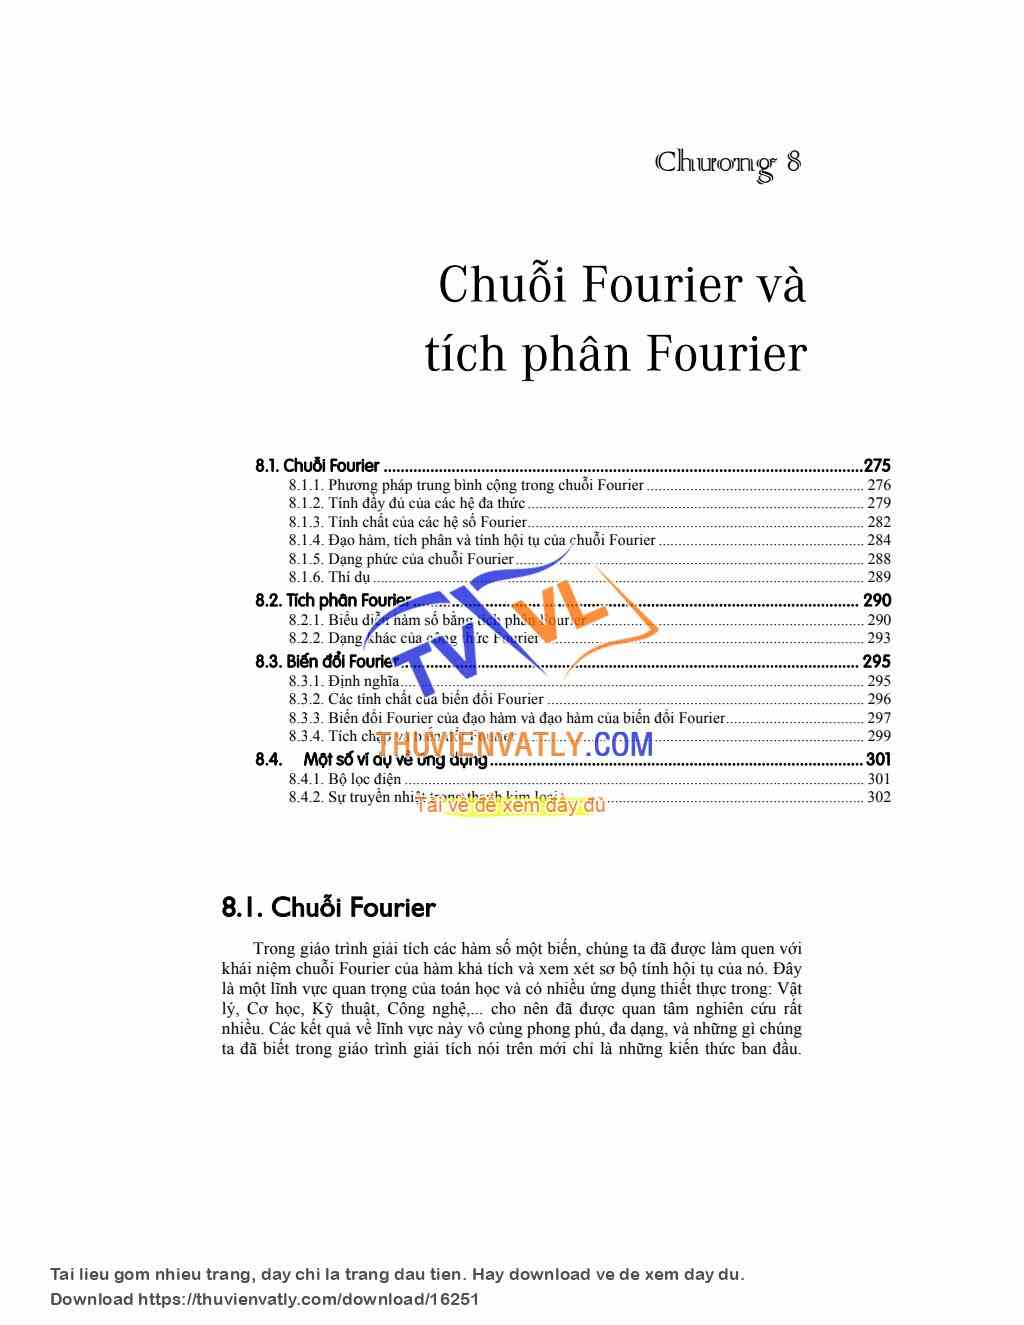 Chuỗi Fourier và tích phân Fourier